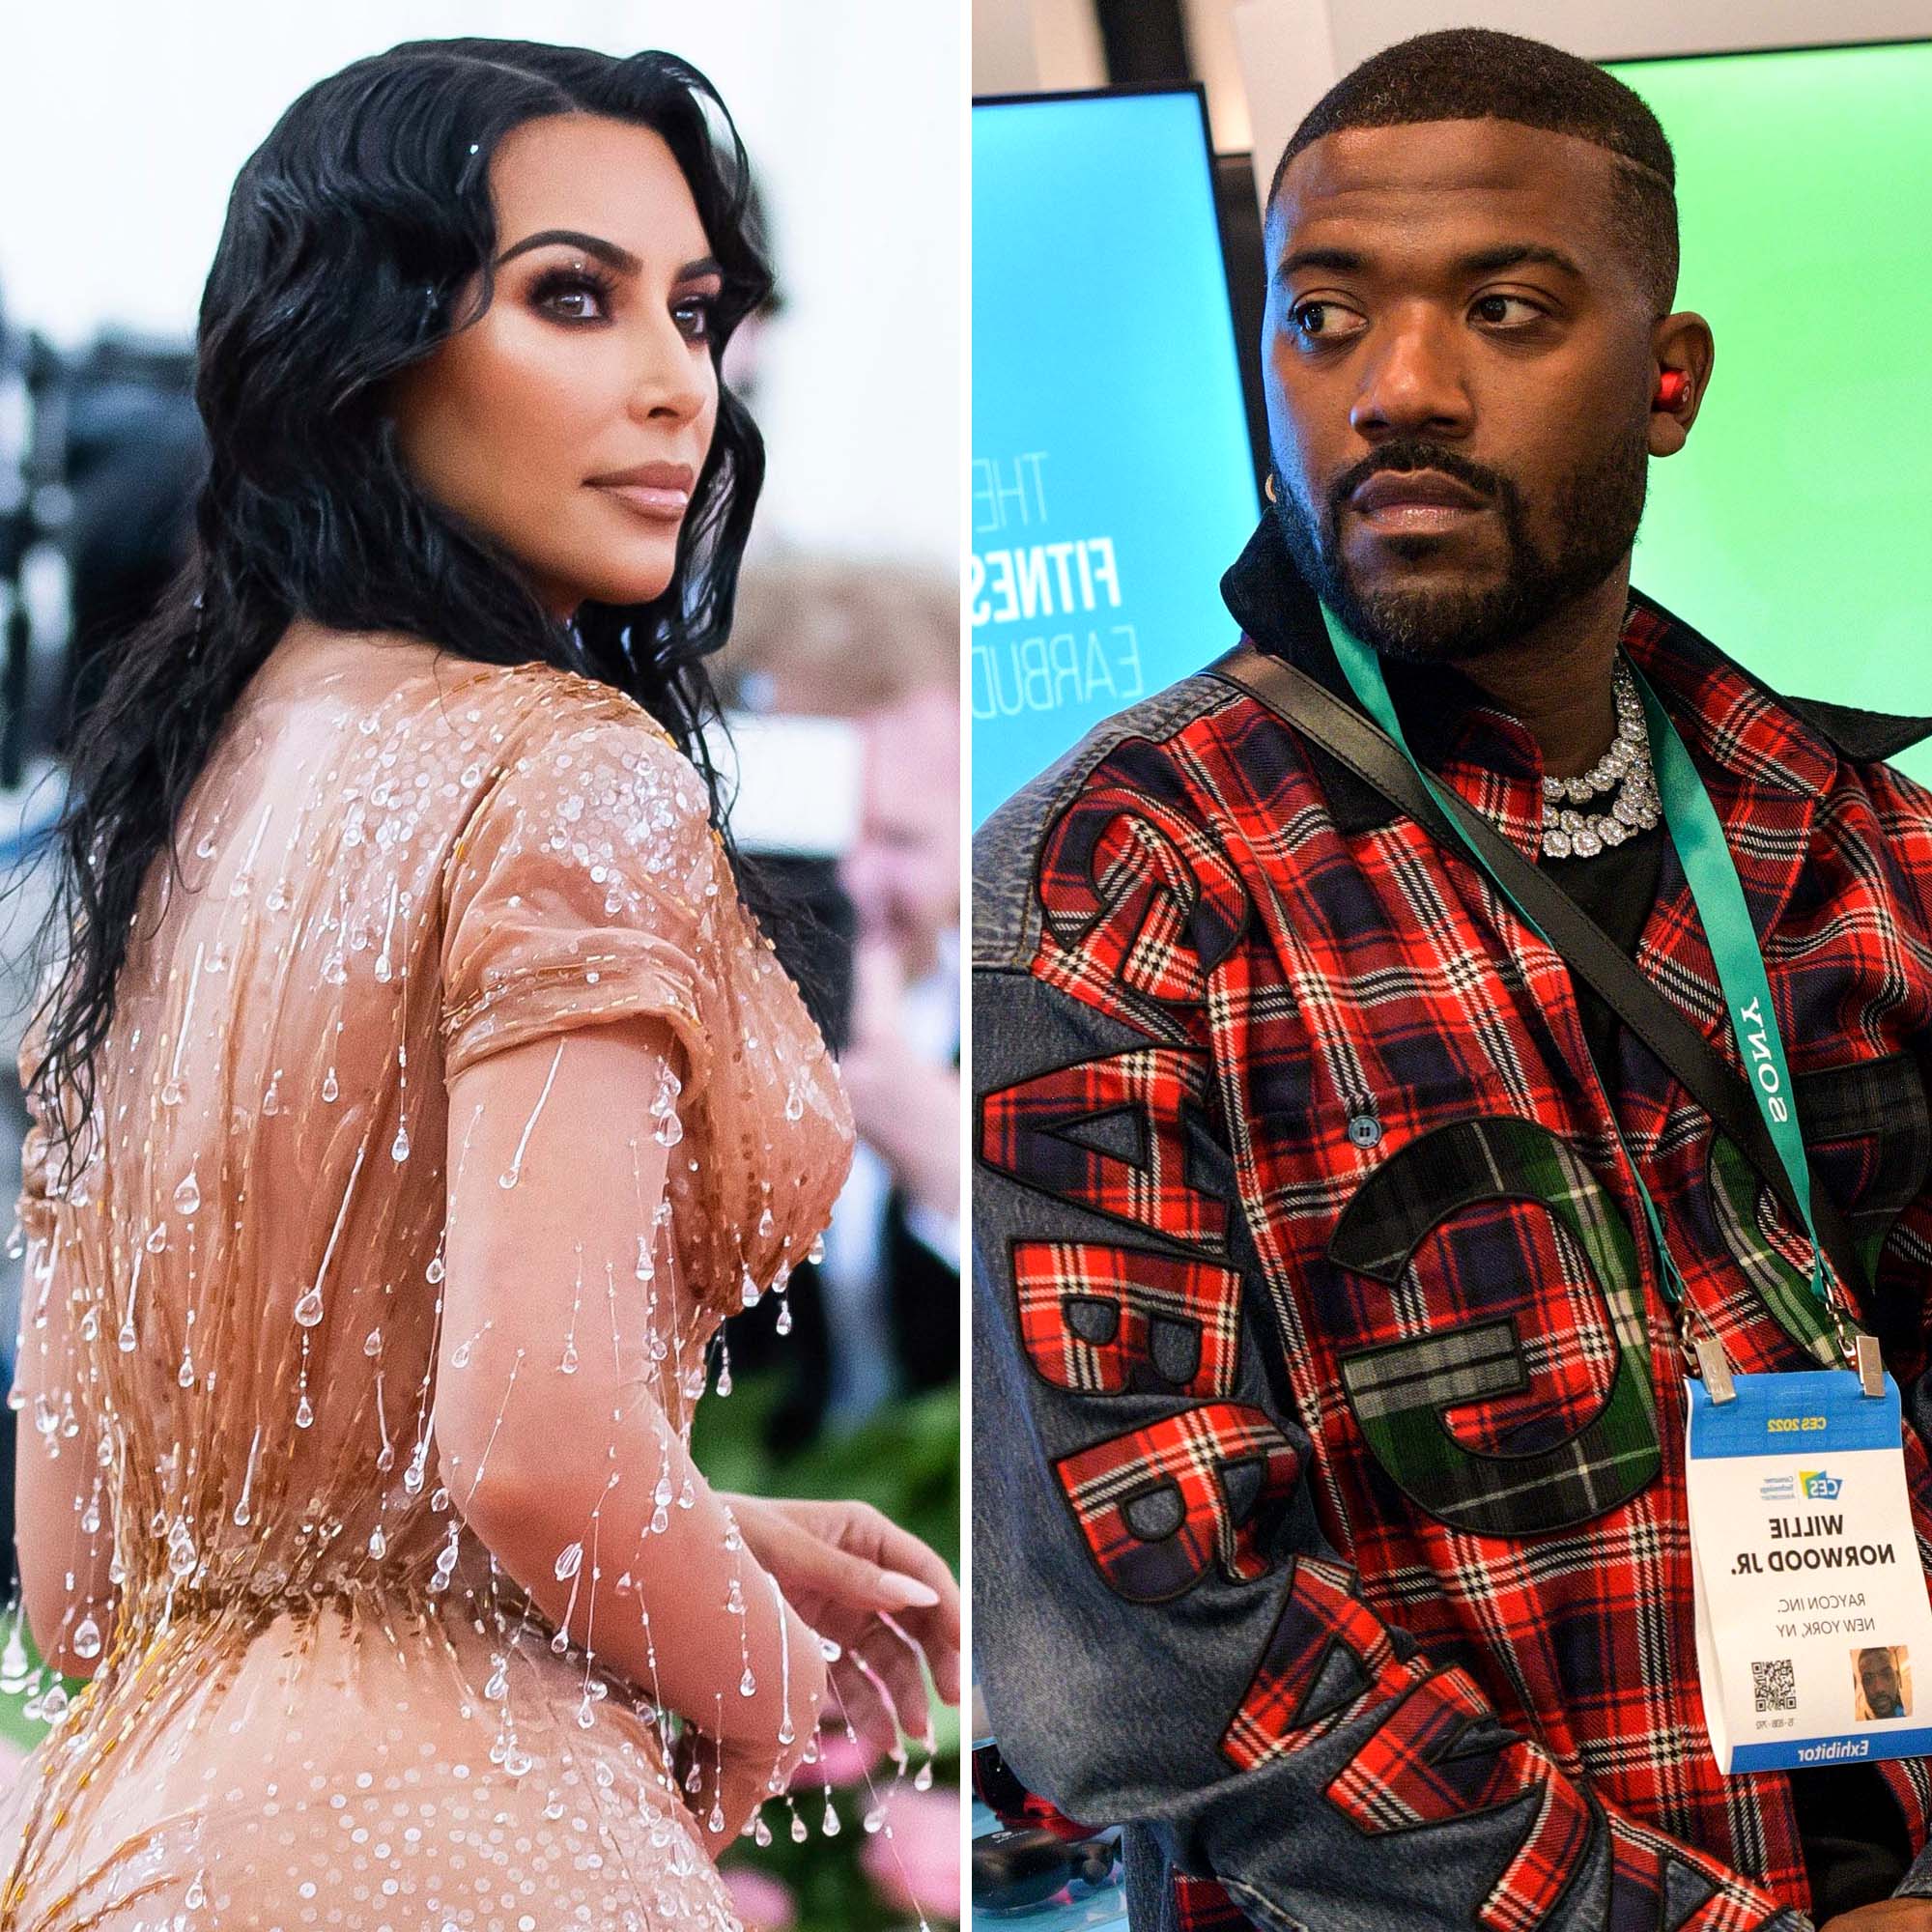 Celebrity Porn Kim Kardashian Ass - Kim Kardashian, Ray J Sex Tape Drama: Everything They've Said